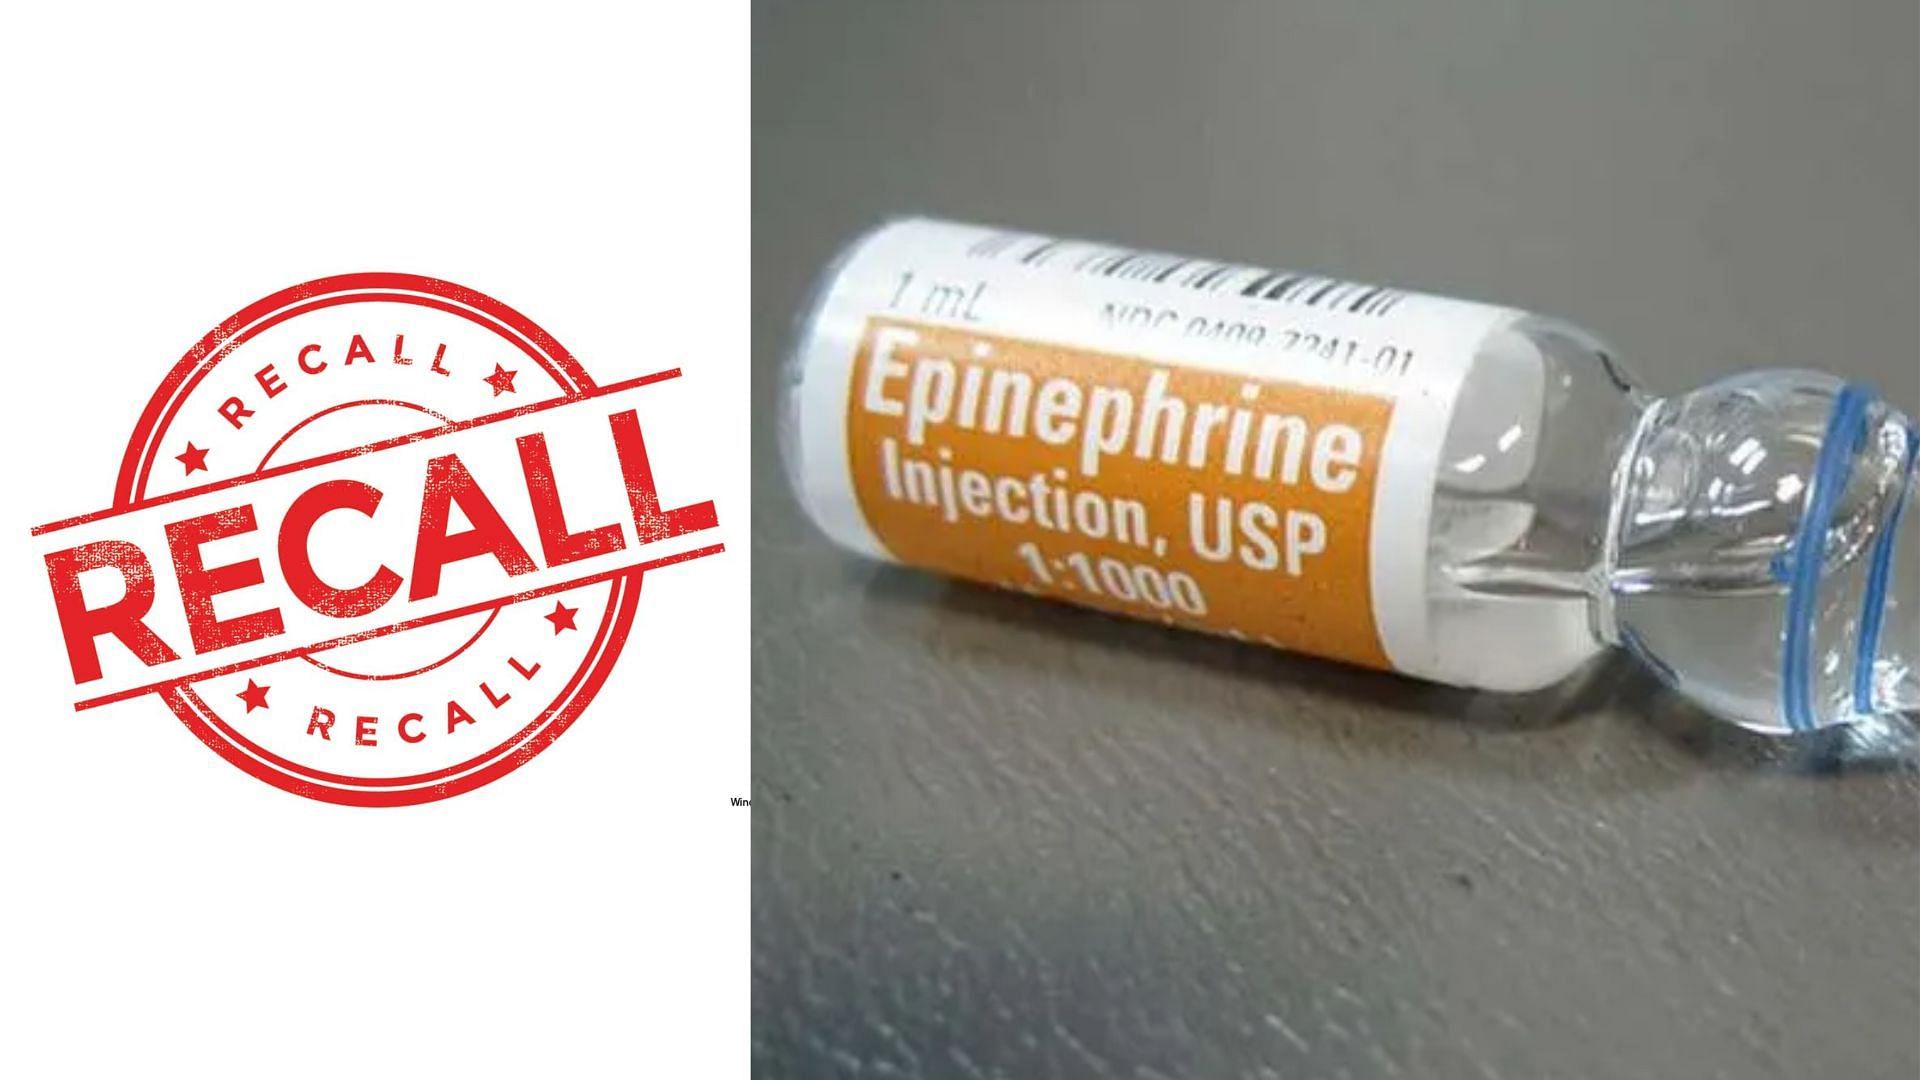 Spectrum Epinephrine Bulk API Powder recalled over concerns of discoloration (Image via FDA)